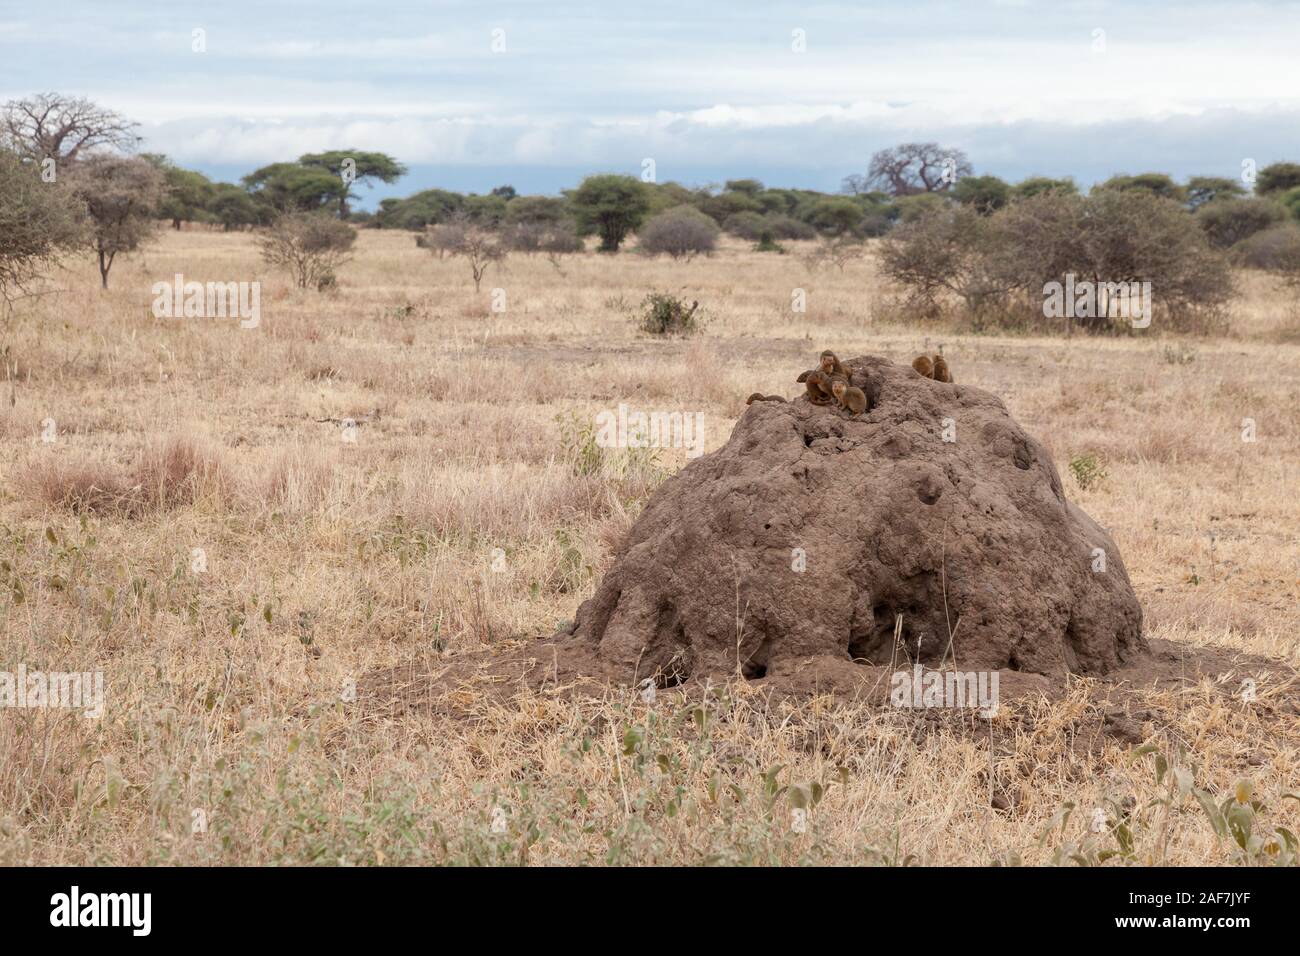 Tanzania. Tarangire National Park.  Common Dwarf Mongoose Atop Termite Mound. Stock Photo